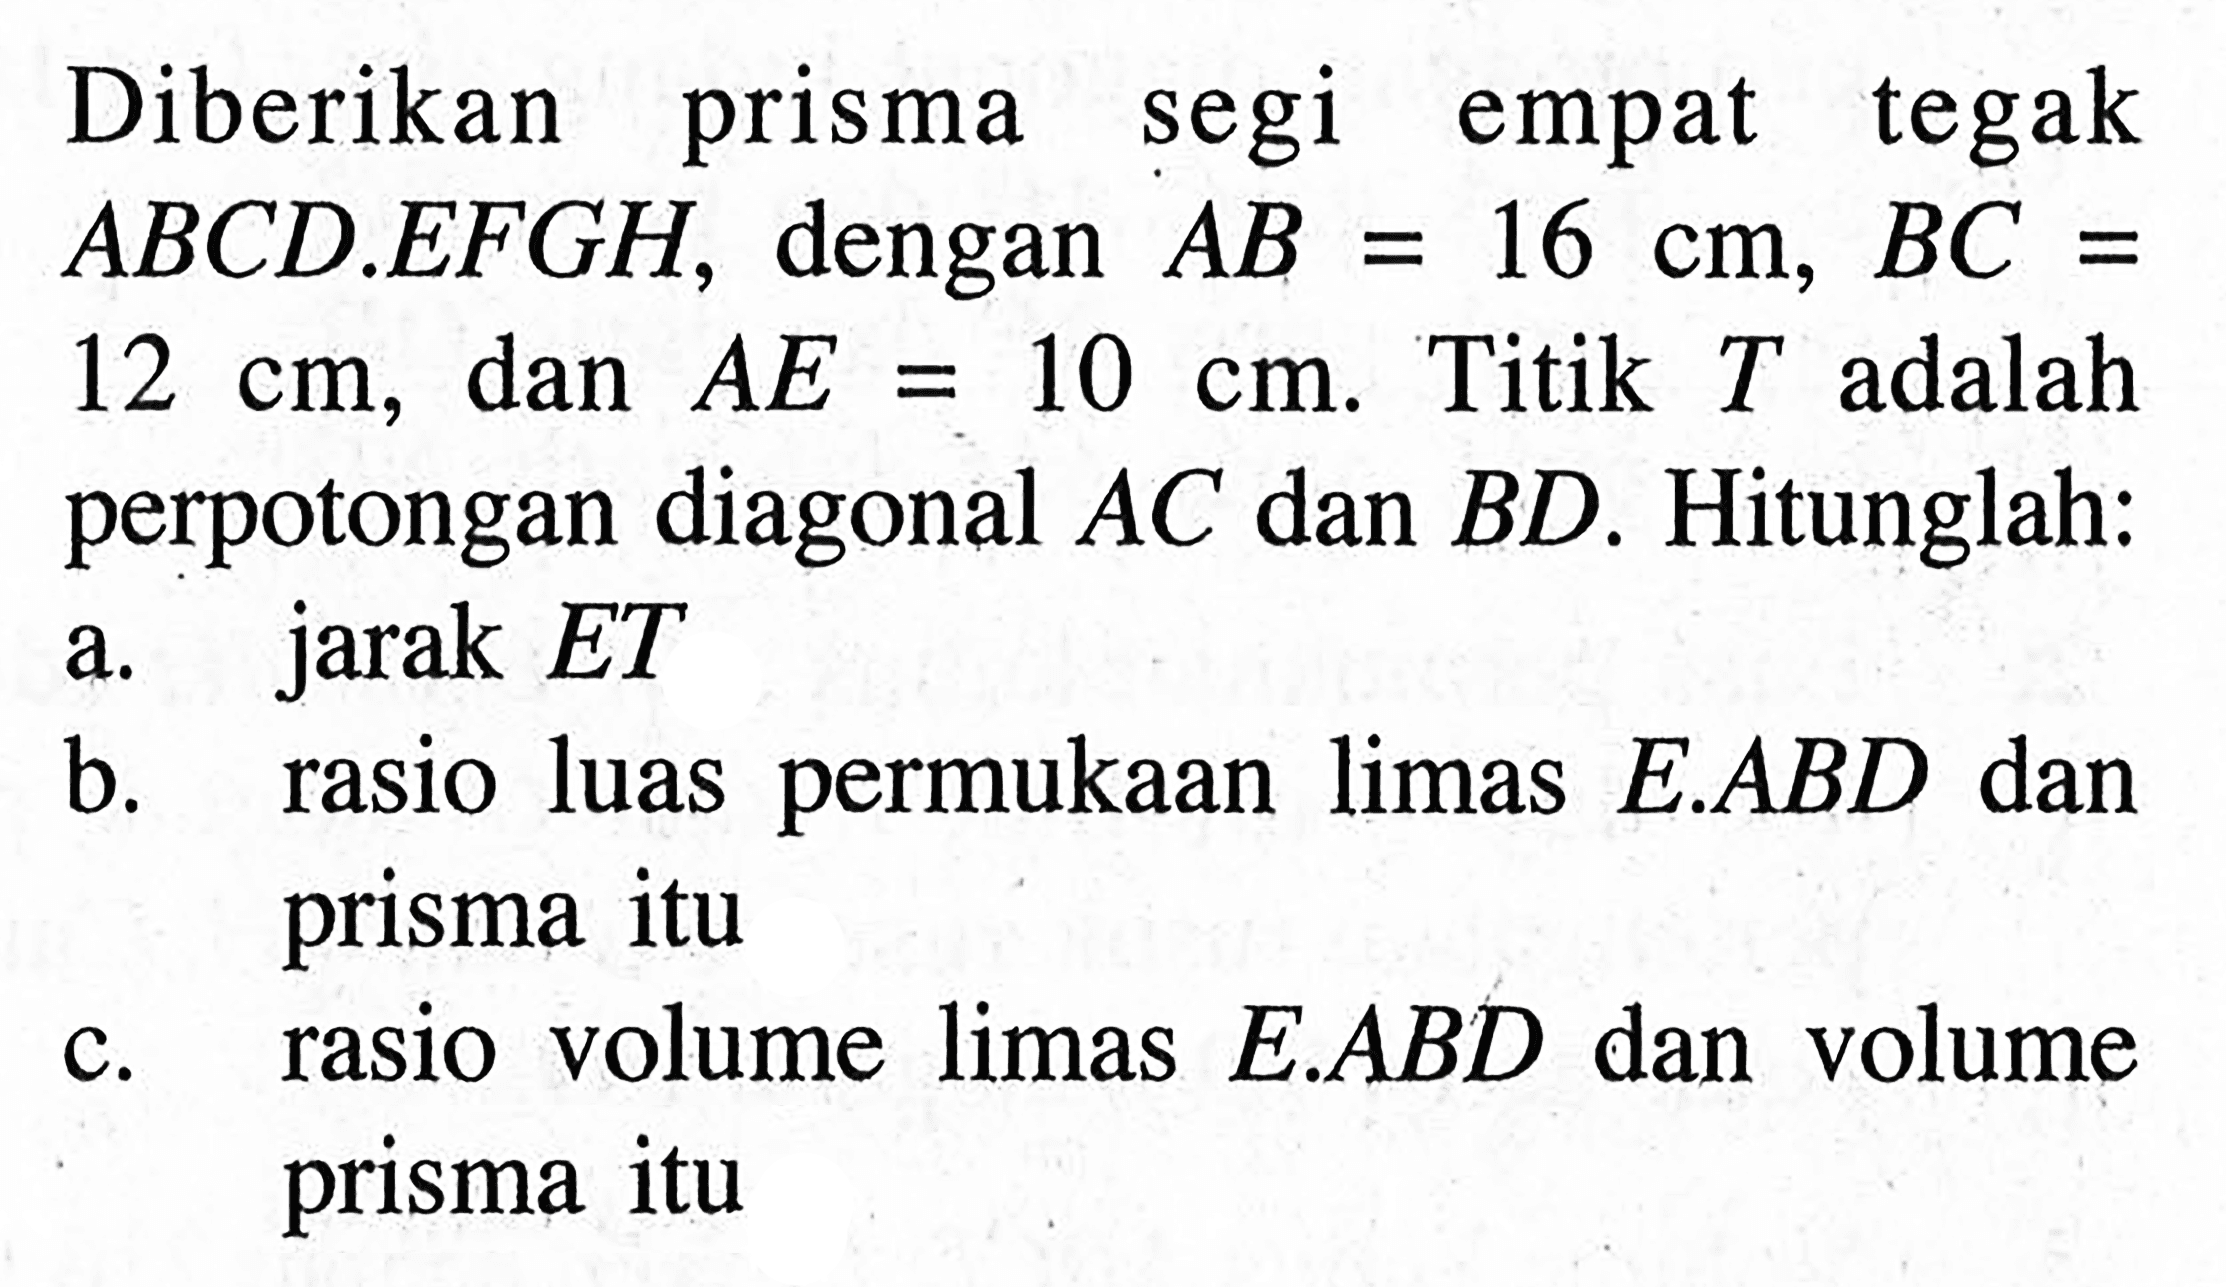 Diberikan prisma segi empat tegak ABCD.EFGH, dengan AB=16 cm, BC=12 cm, dan AE=10 cm. Titik T adalah perpotongan diagonal AC dan BD. Hitunglah: a. jarak ET b. rasio luas permukaan limas E.ABD dan prisma itu c. rasio volume limas E.ABD dan volume prisma itu